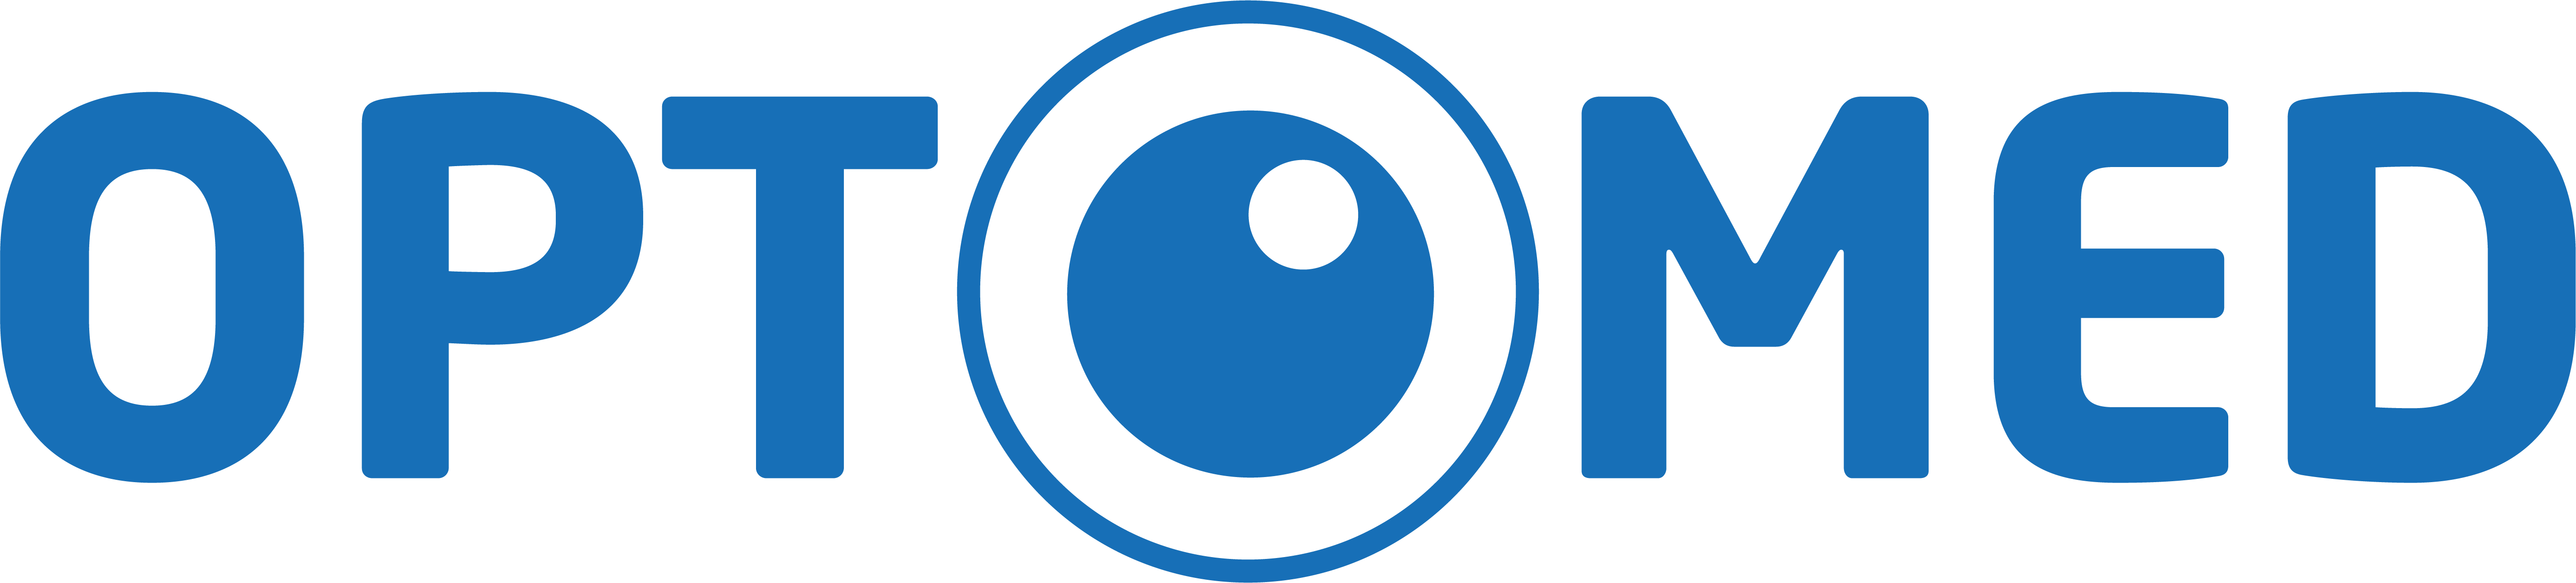 OPTOMED_logo